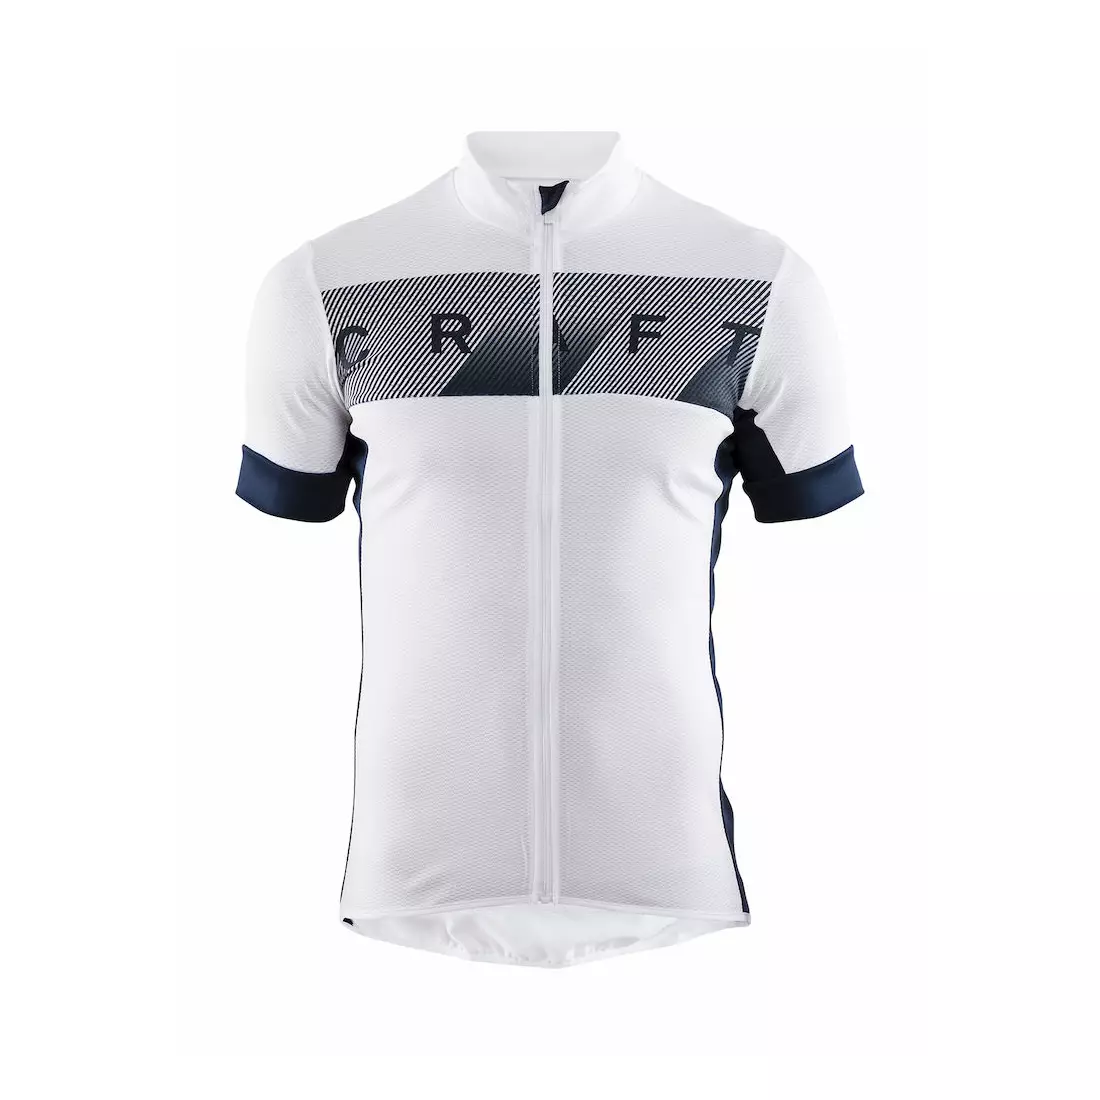 CRAFT REEL pánský cyklistický dres, bílý 1906096-900396